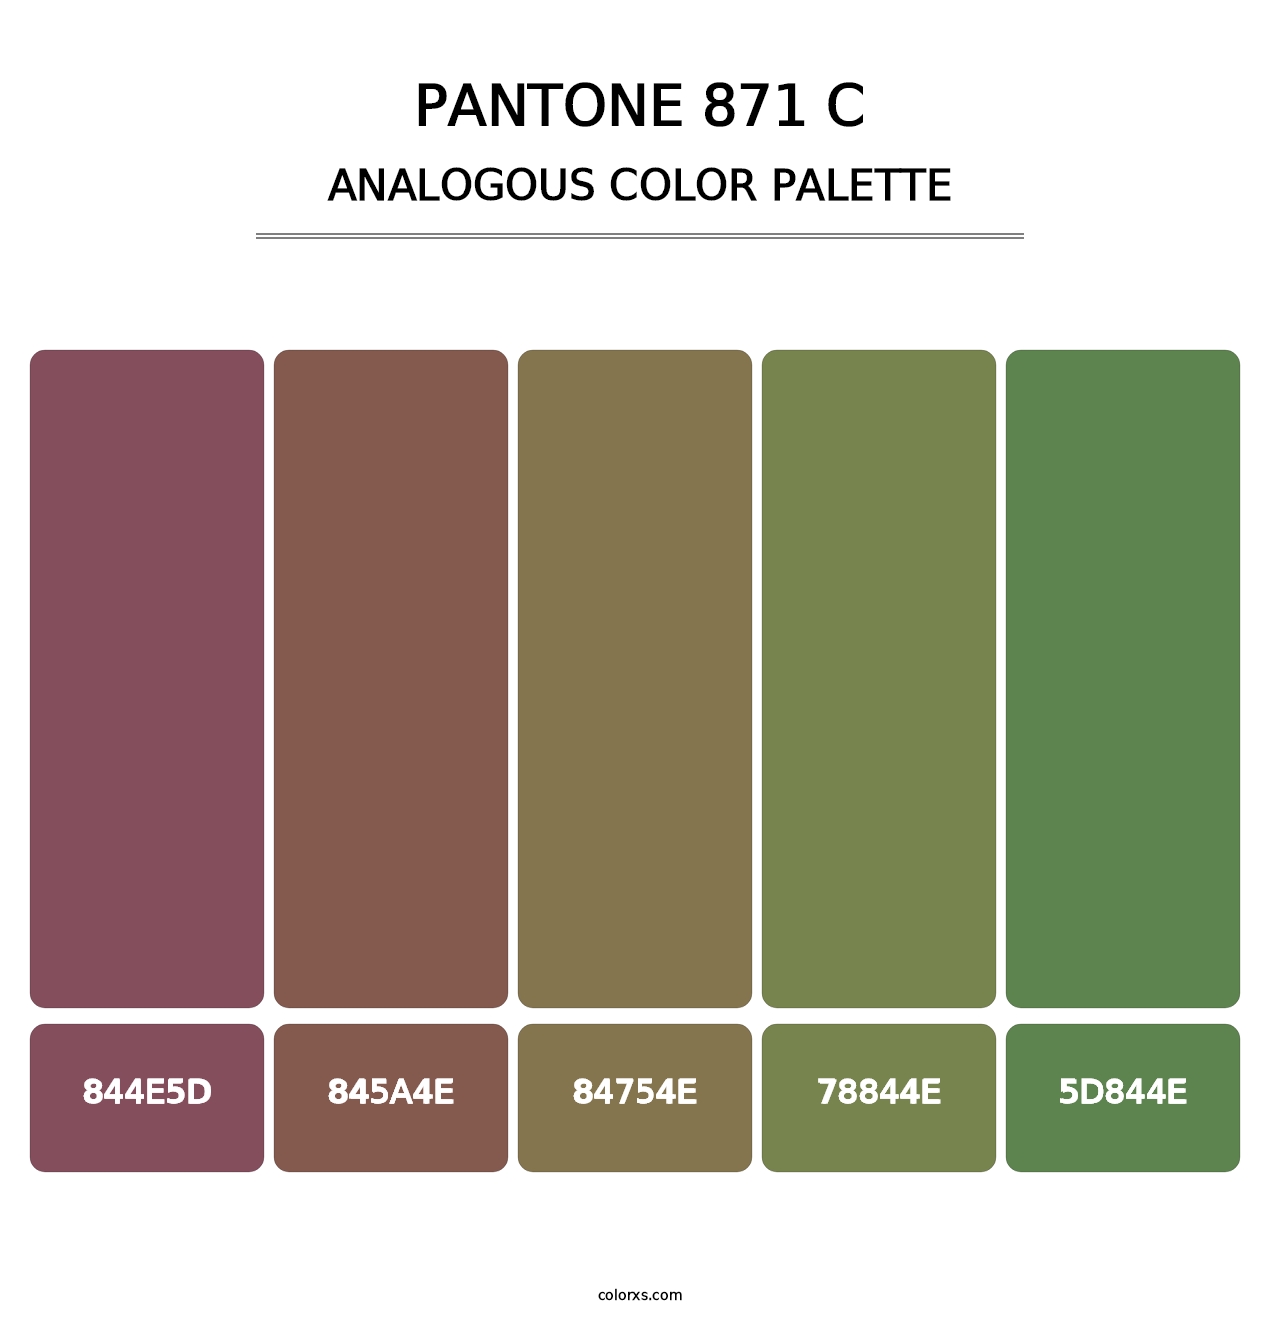 PANTONE 871 C - Analogous Color Palette